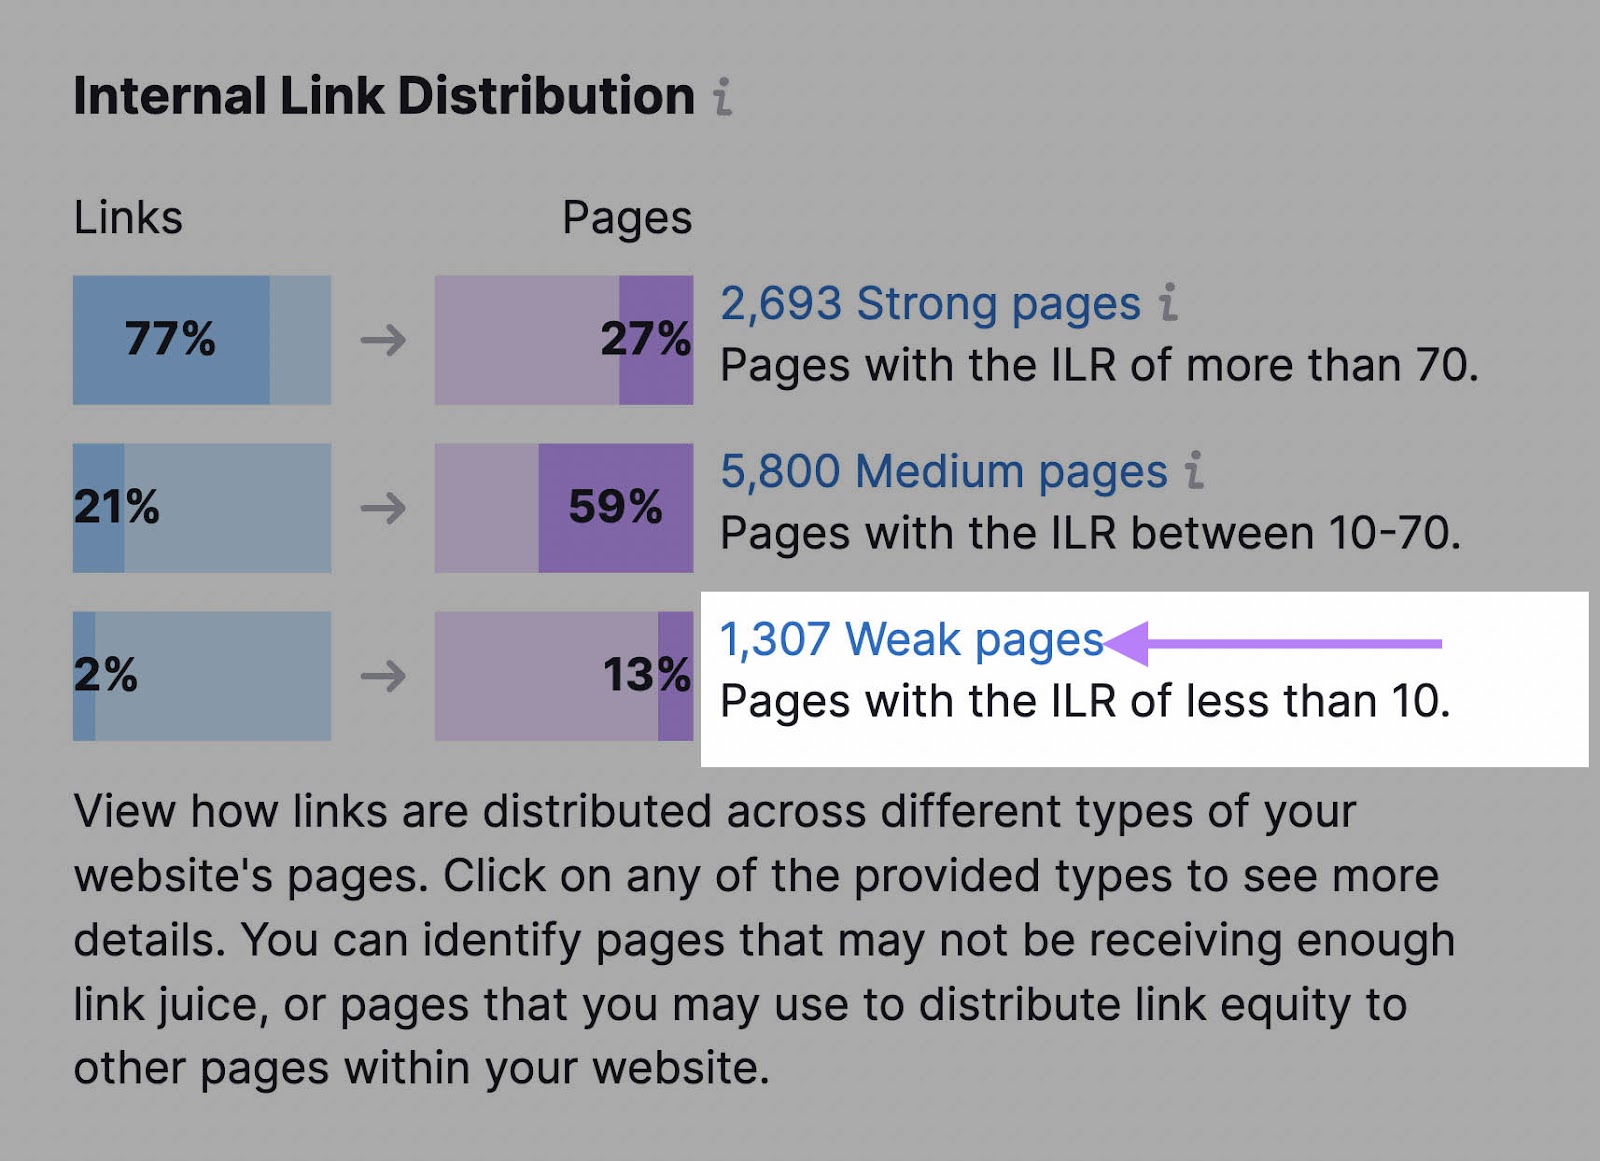 “1,307 Weak pages” link highlighted under "Internal Link Distribution" widget